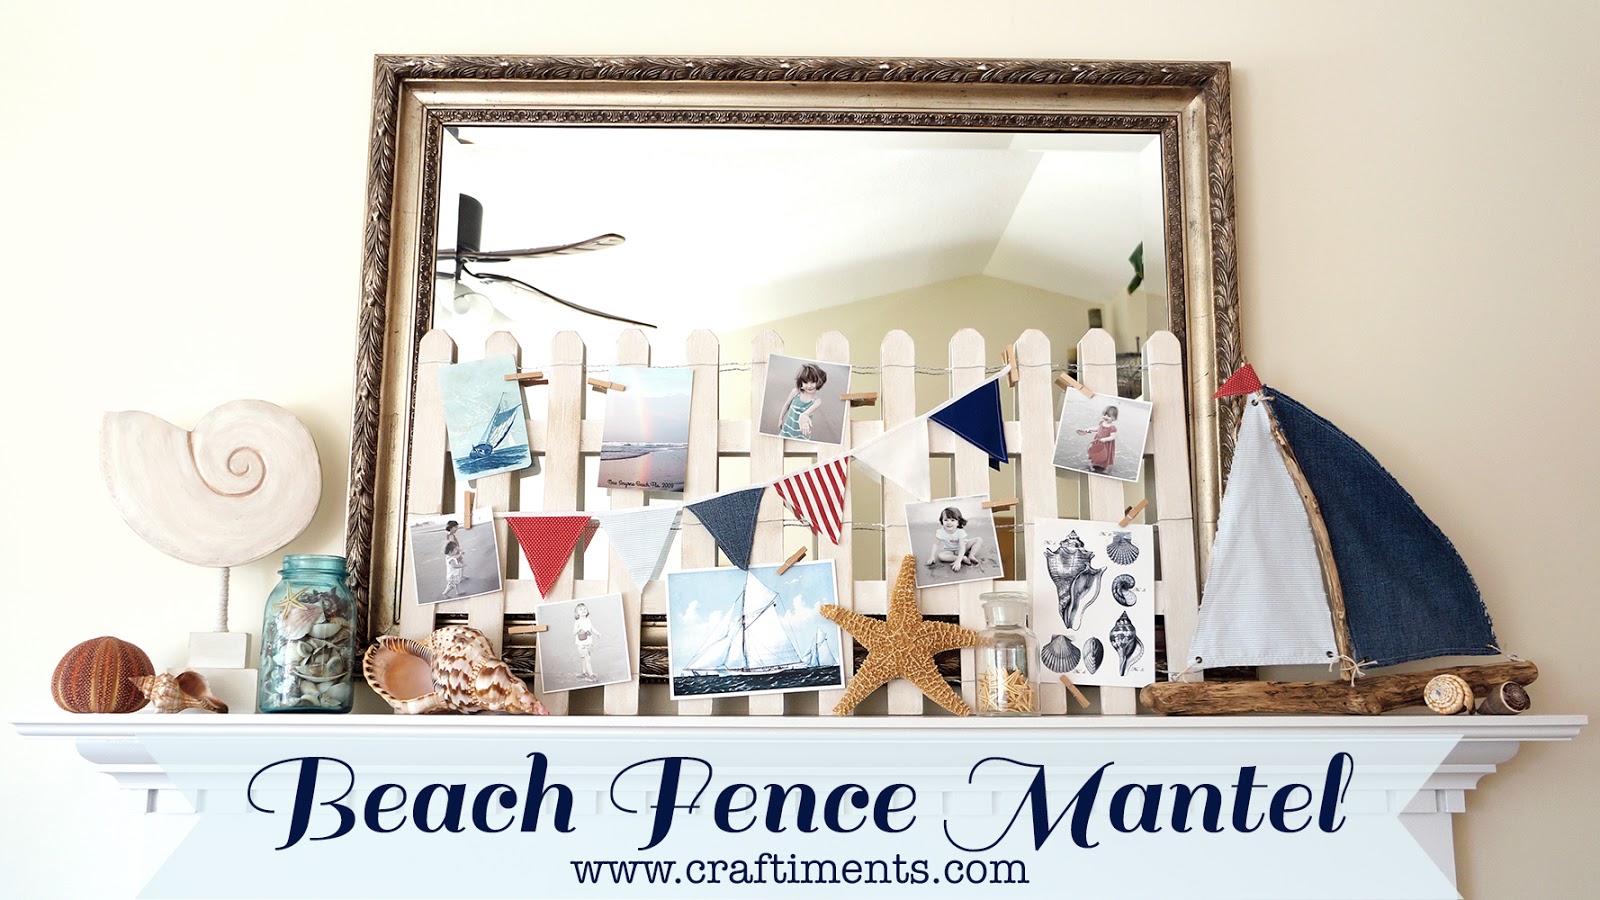 Craftiments: Beach Fence Summer Mantel